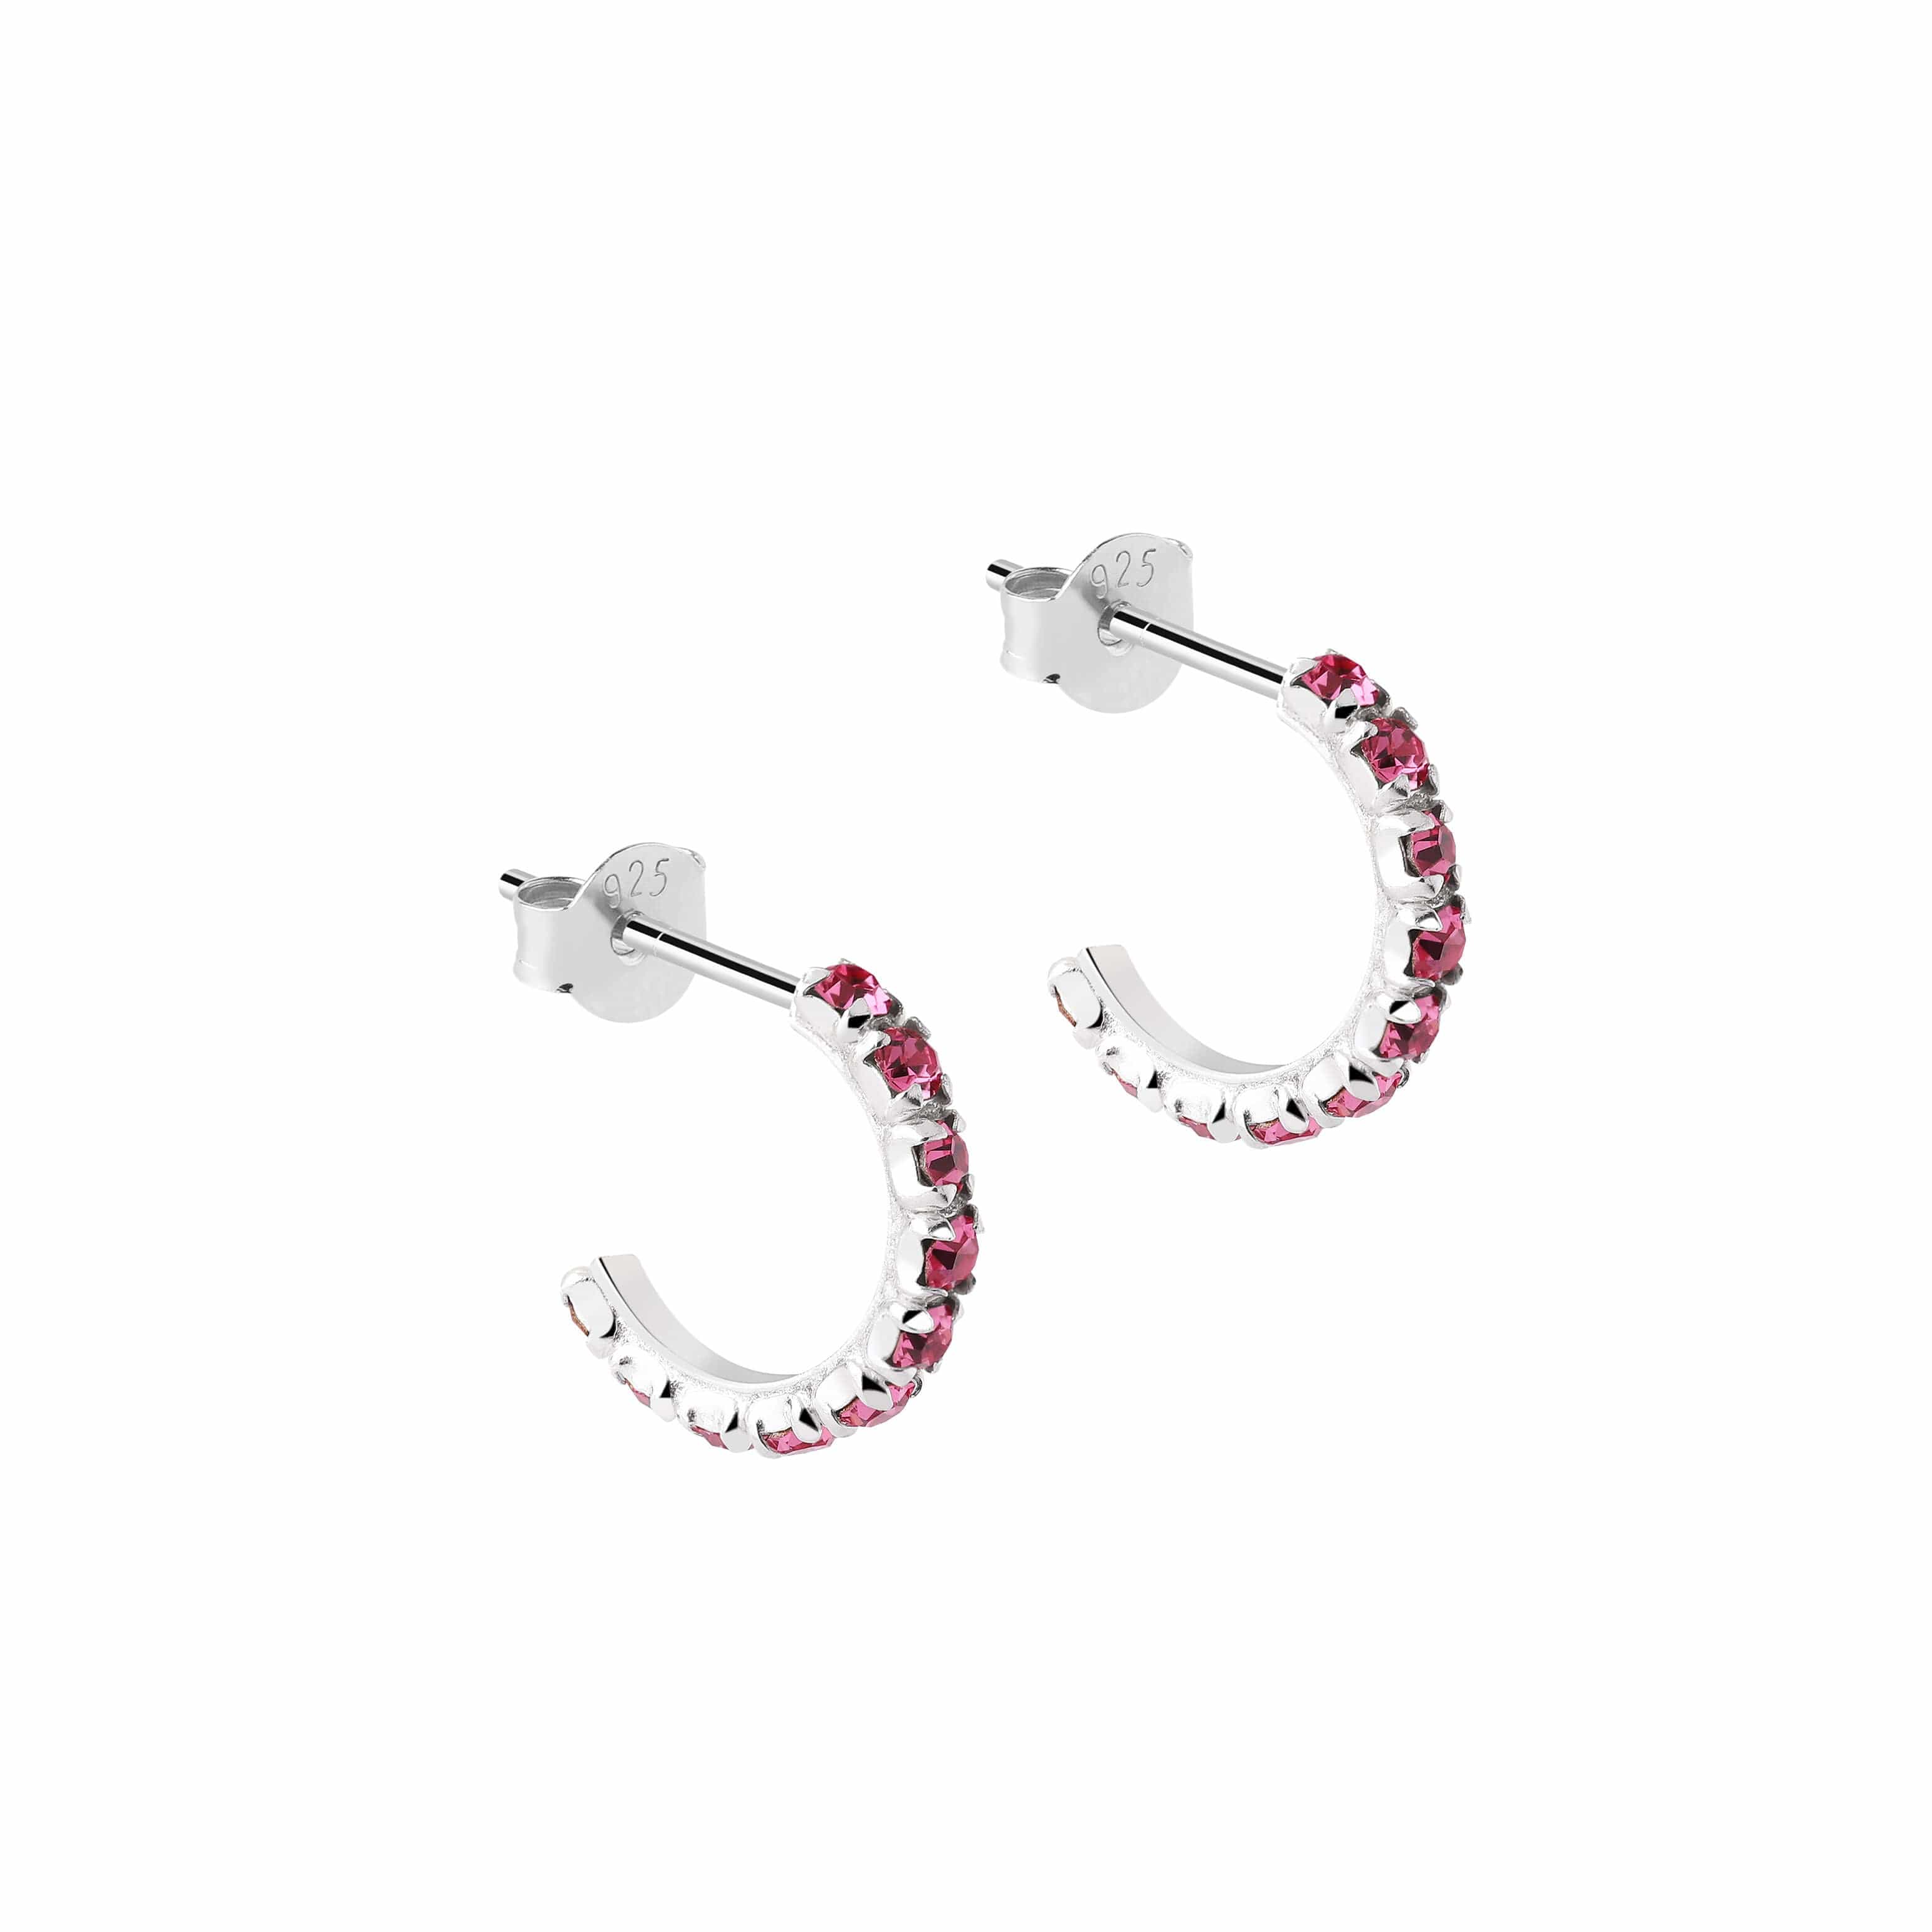 rose quartz earring 925 silver, rozenkwarts oorbel zilver